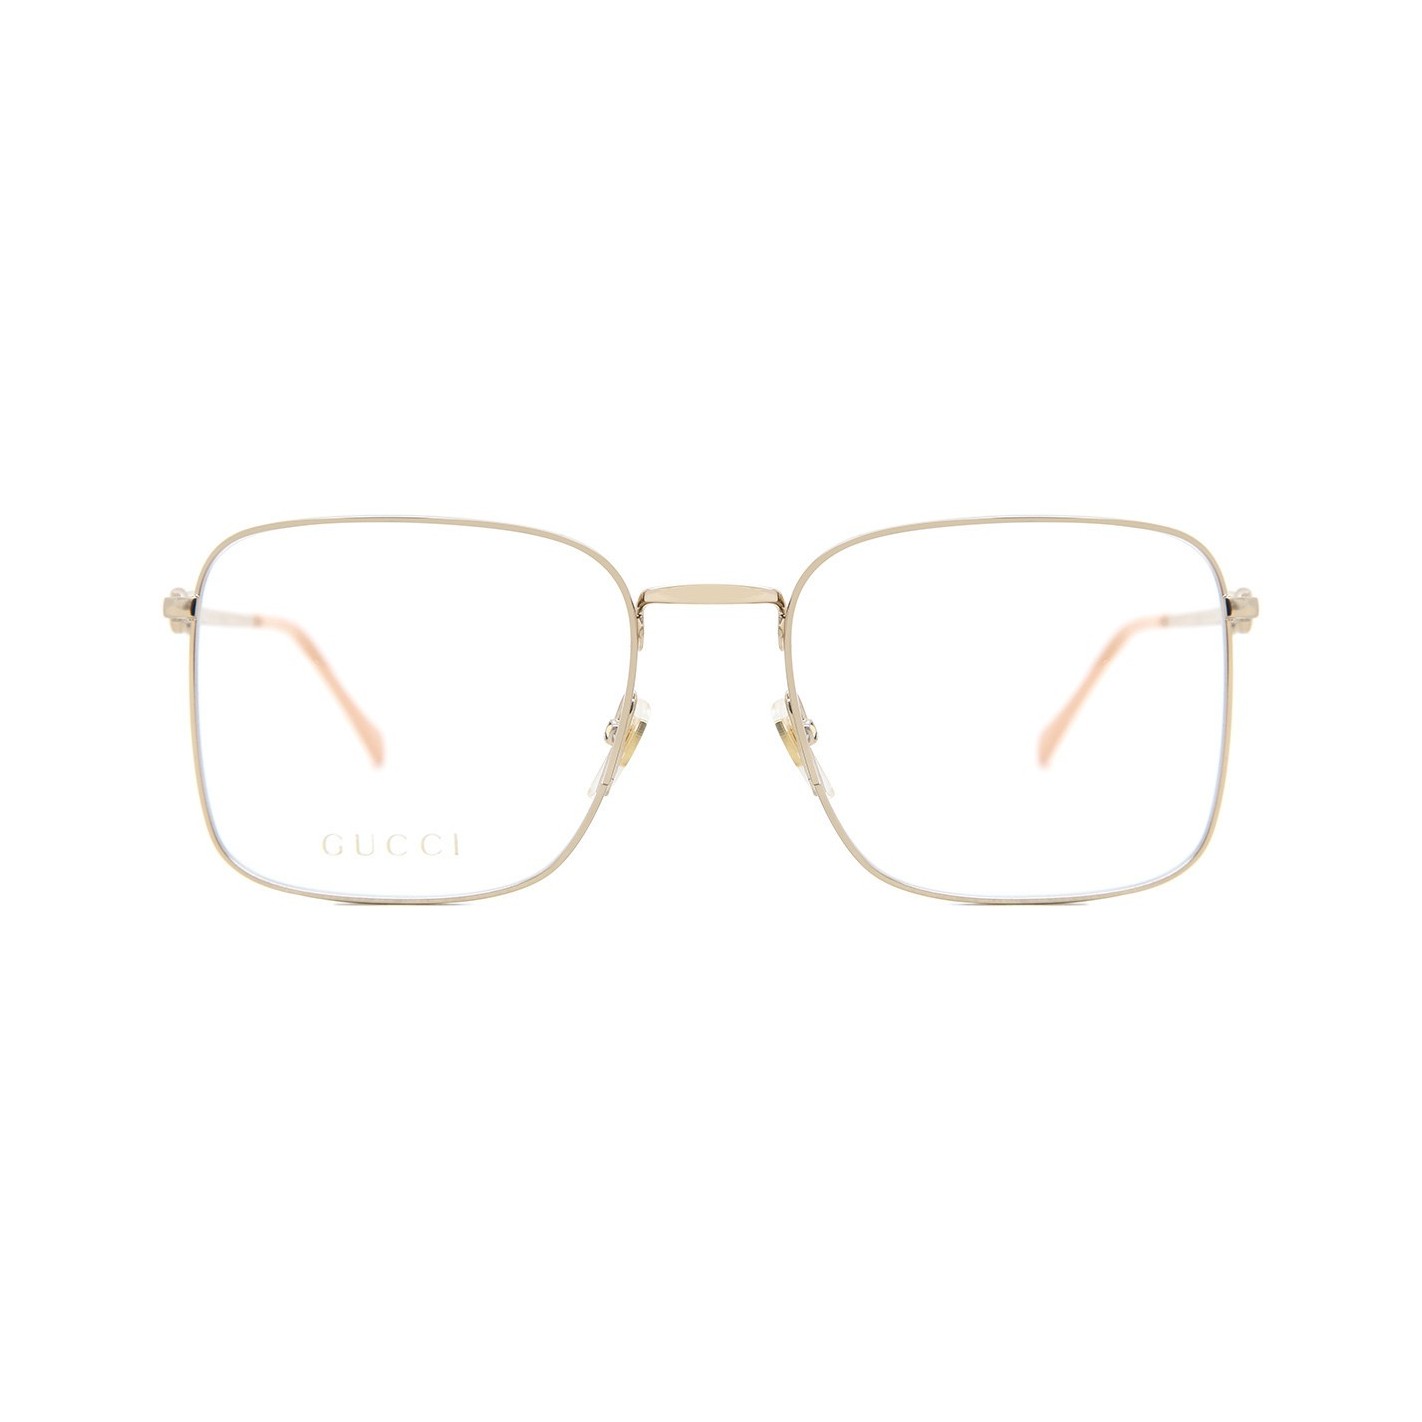 Estás gafas de Lujo te marcarán la diferencia combinandolas con tu look más exclusivo. Las gafas extravagancia,